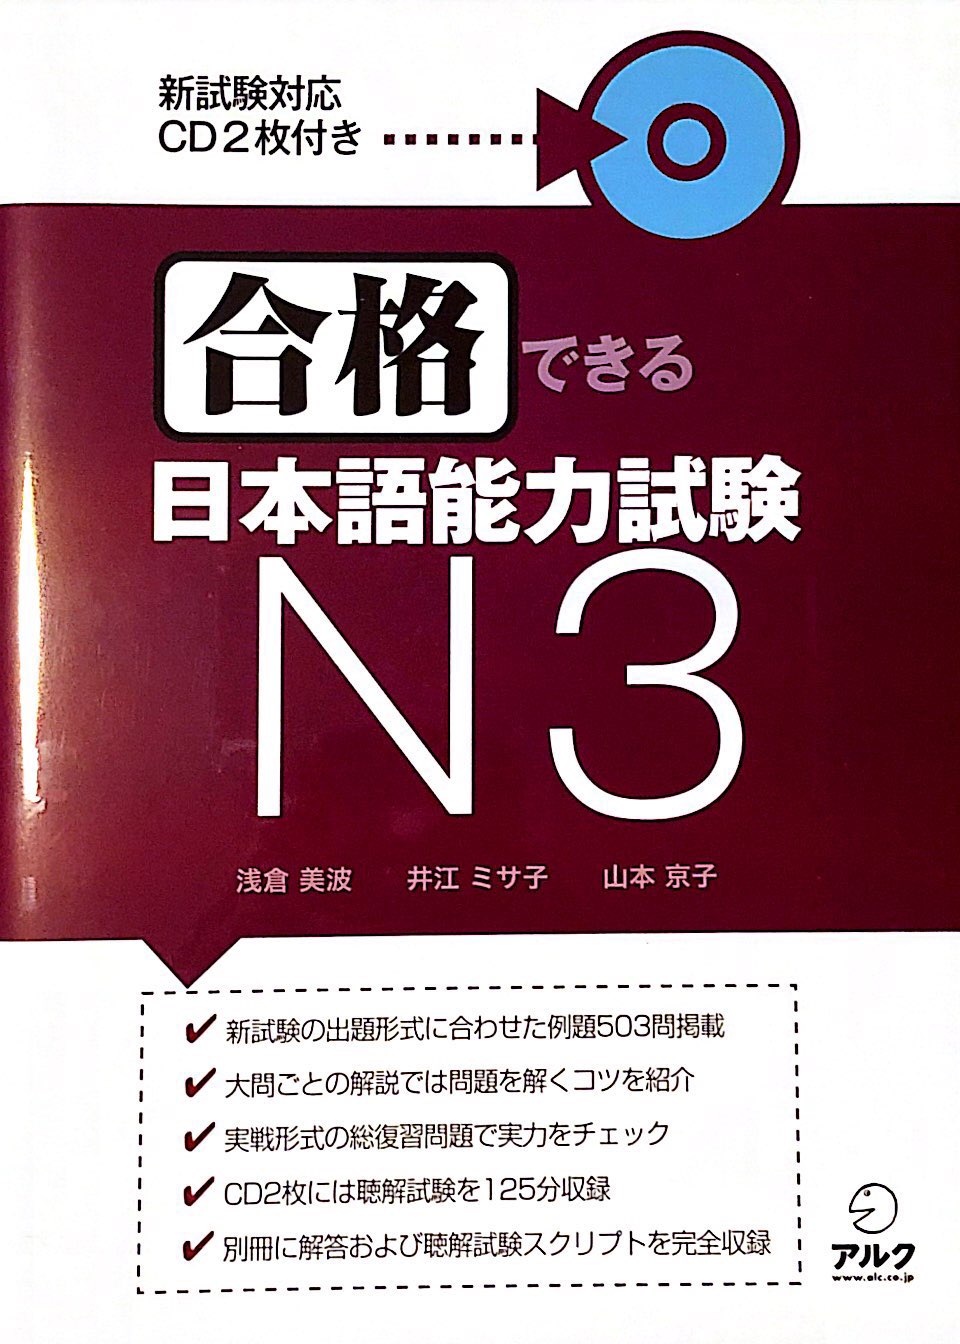 5 Japanese Light Novels for JLPT N3 Level Learners